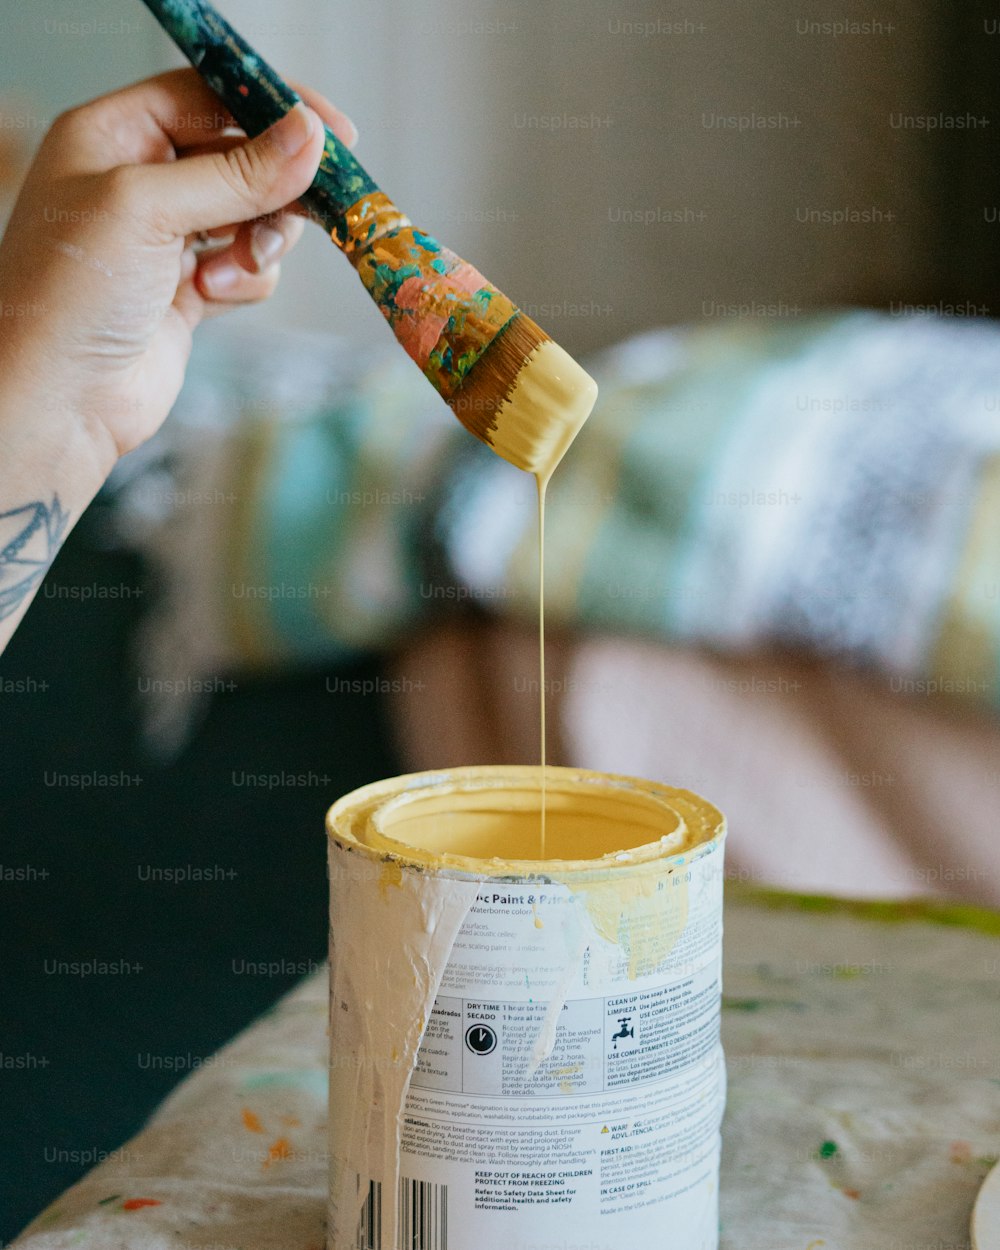 Una persona sosteniendo un pincel sobre una lata de pintura amarilla